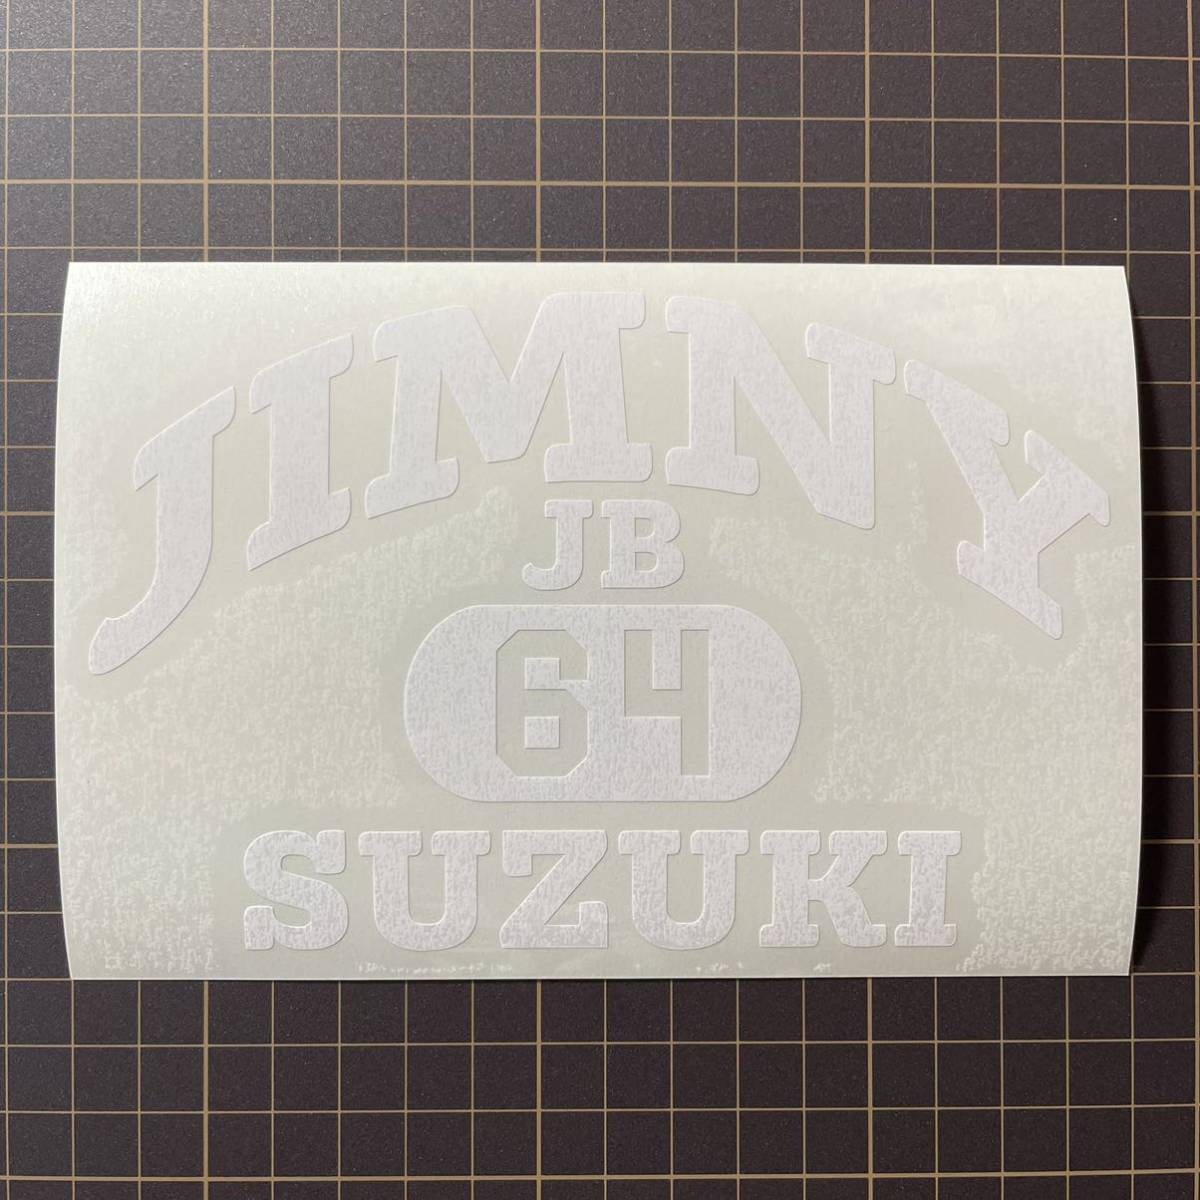 [ cutting sticker ] Jimny jb64 college Logo jimny Suzuki bell .jb64w Logo off-road vehicle off-road 4WD Jimny -stroke off Roader 